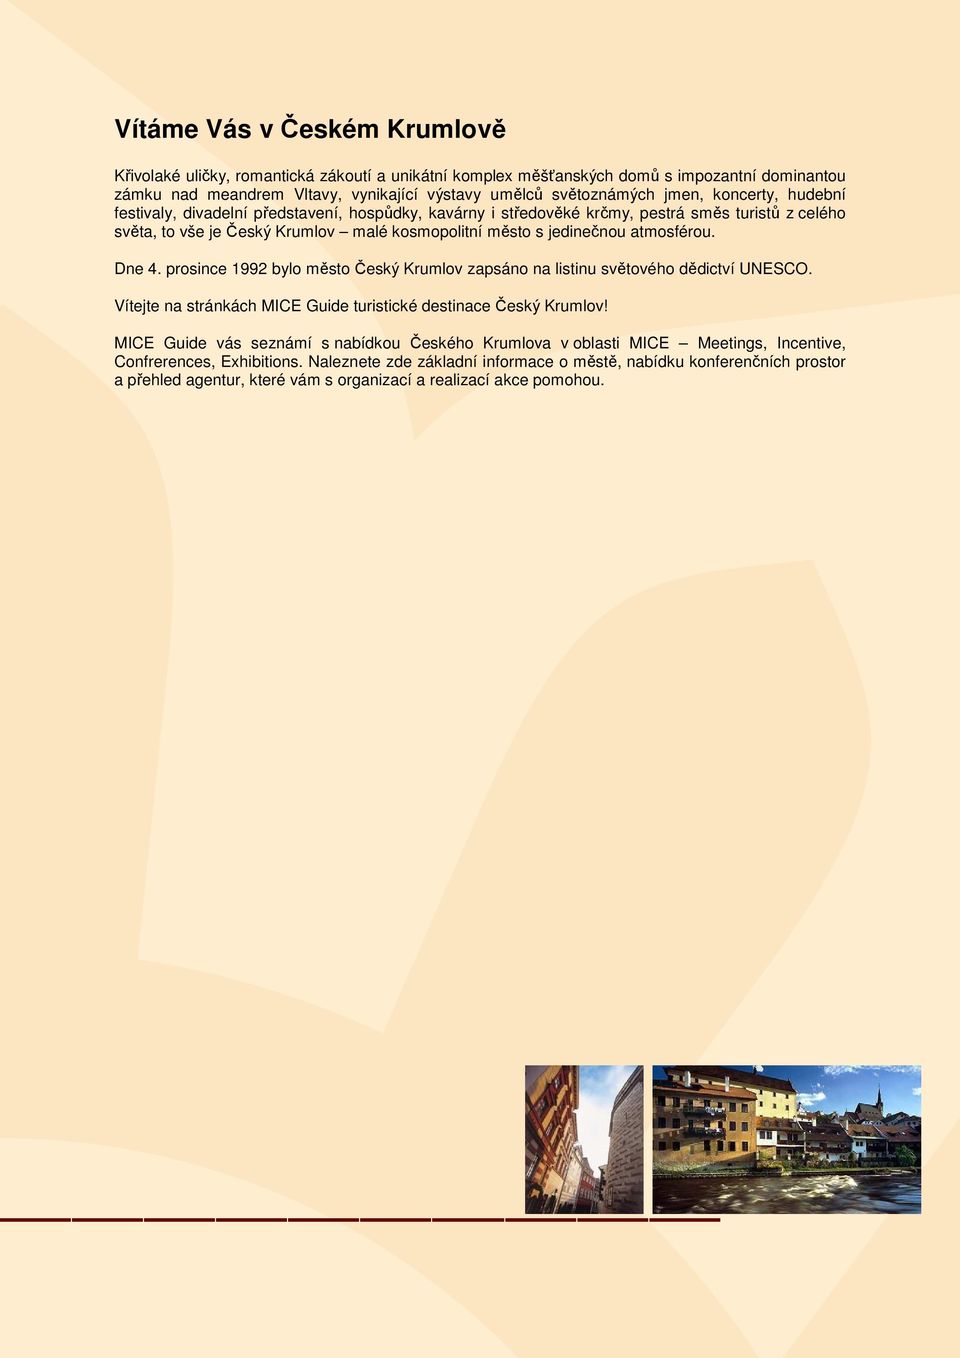 Dne 4. prosince 1992 bylo město Český Krumlov zapsáno na listinu světového dědictví UNESCO. Vítejte na stránkách MICE Guide turistické destinace Český Krumlov!